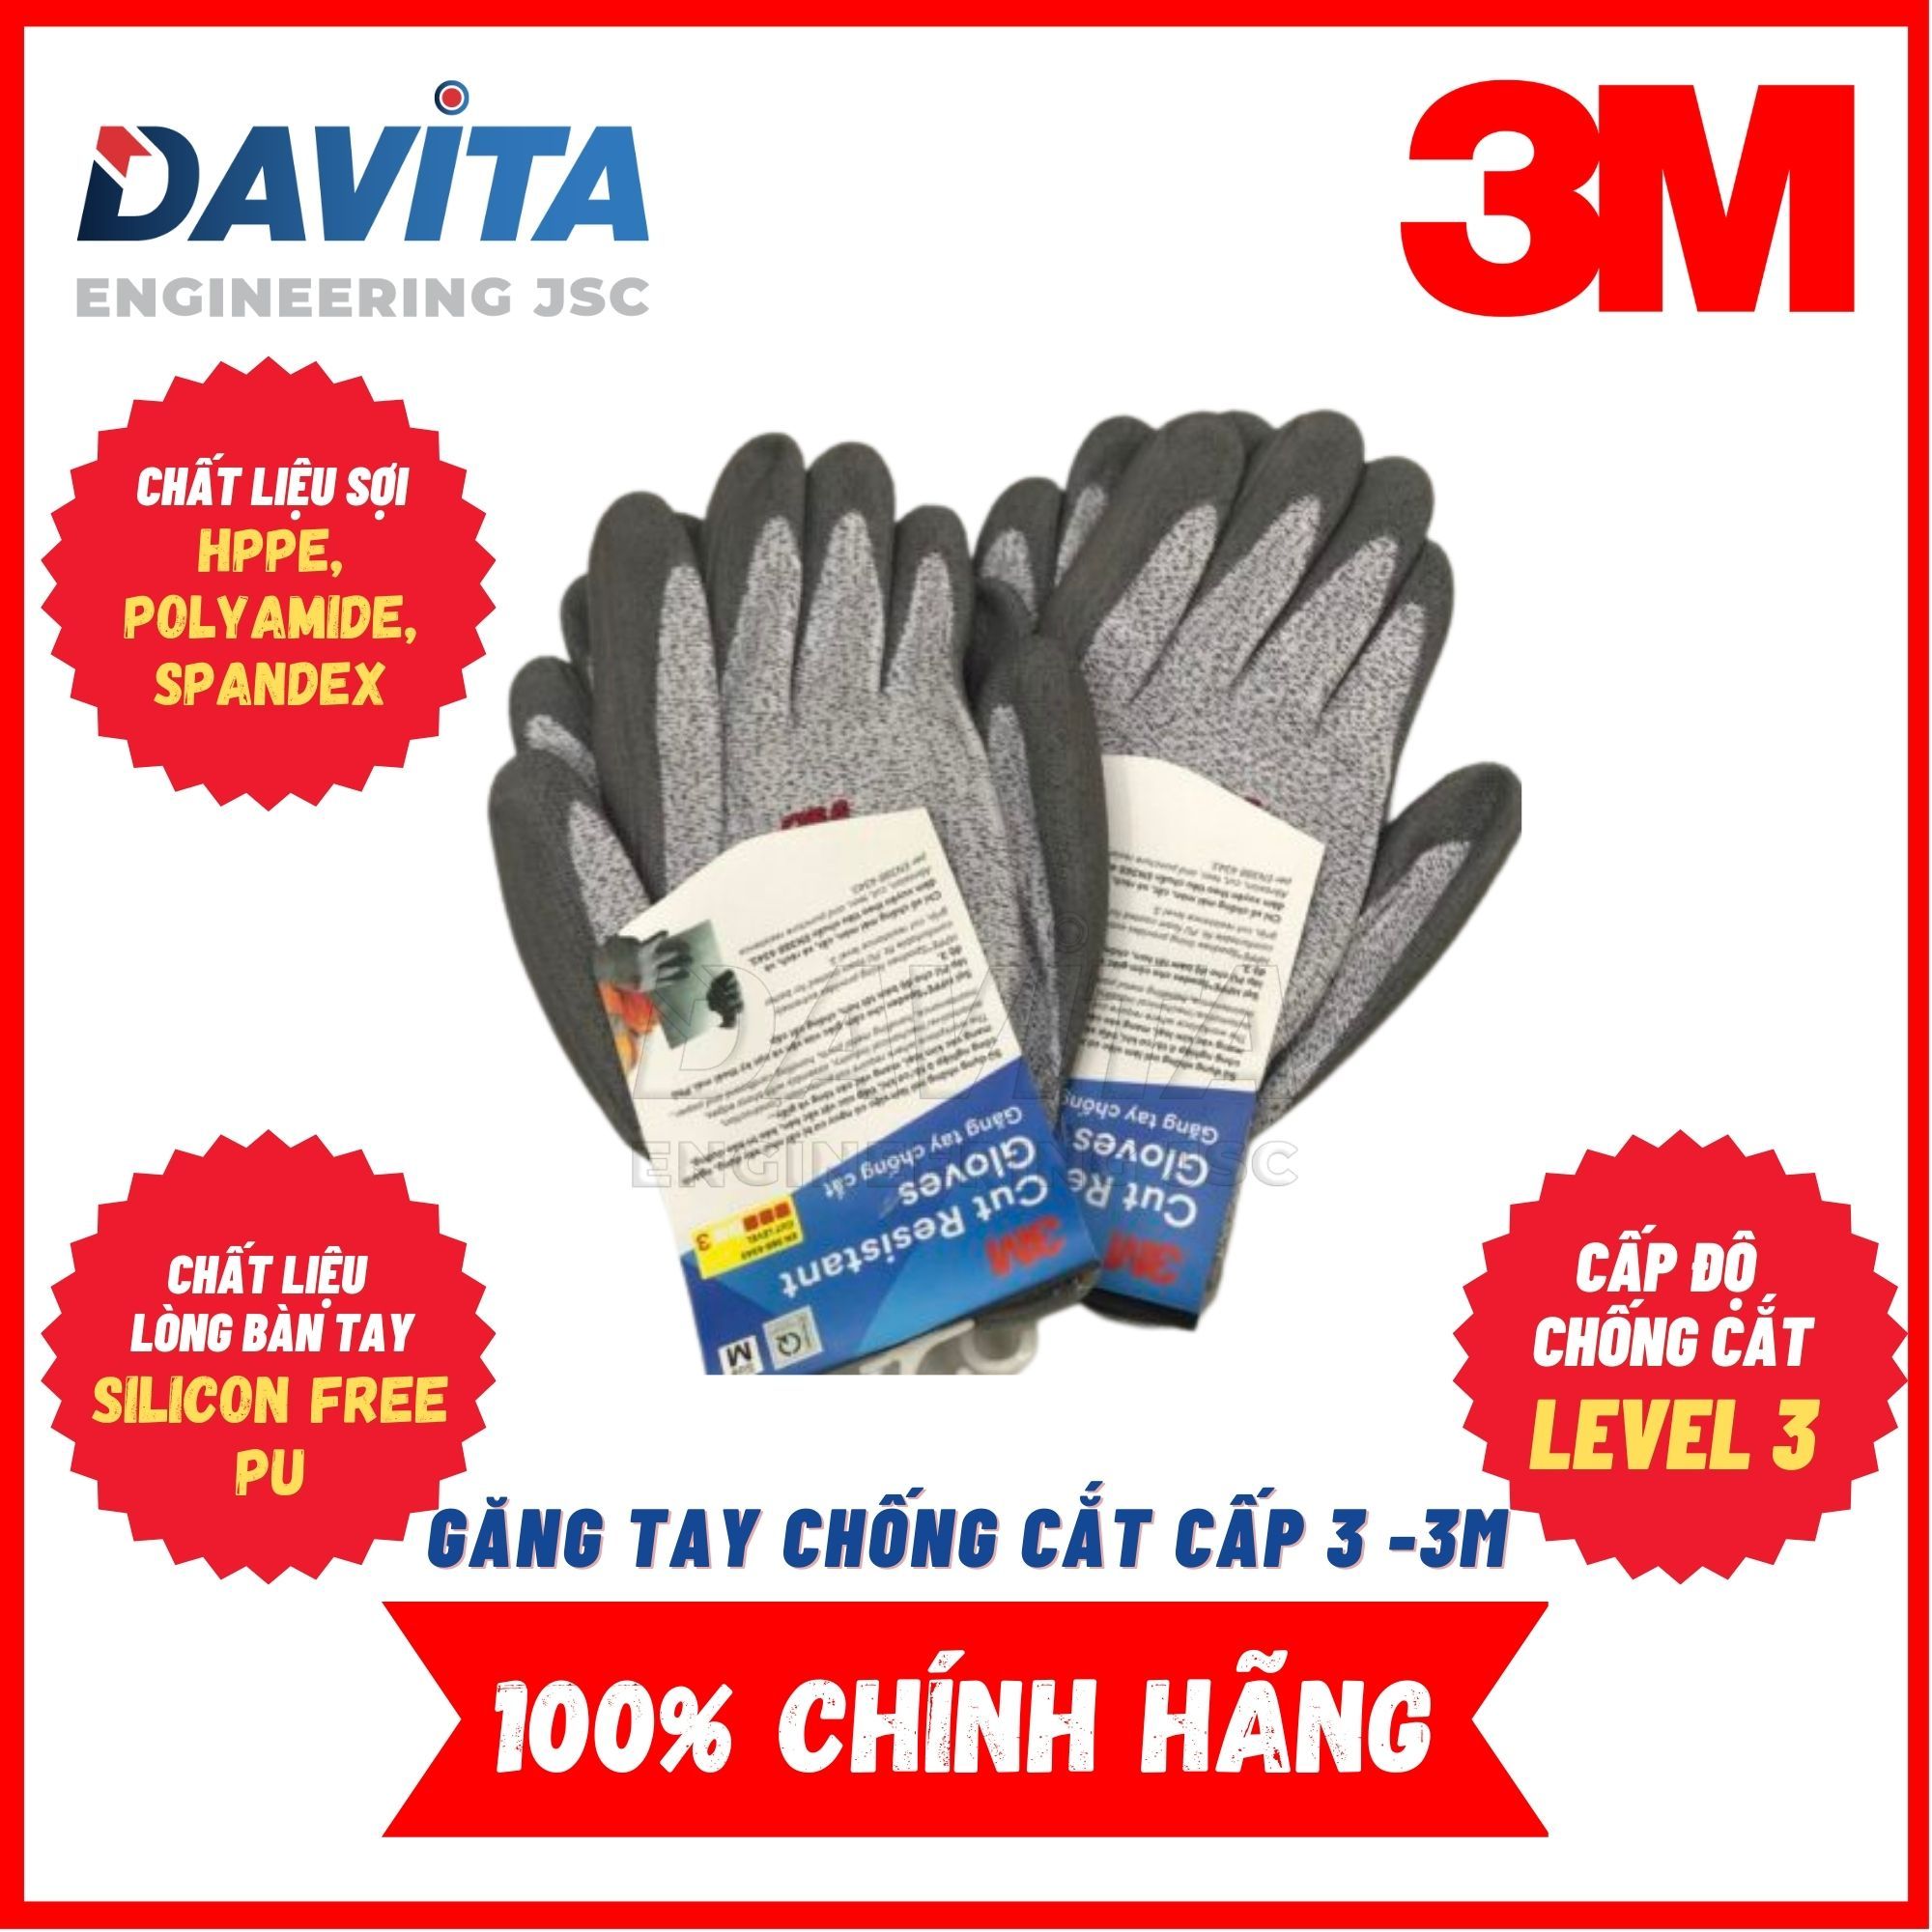 Găng tay chống cắt 3M cấp độ 3 màu xám trắng